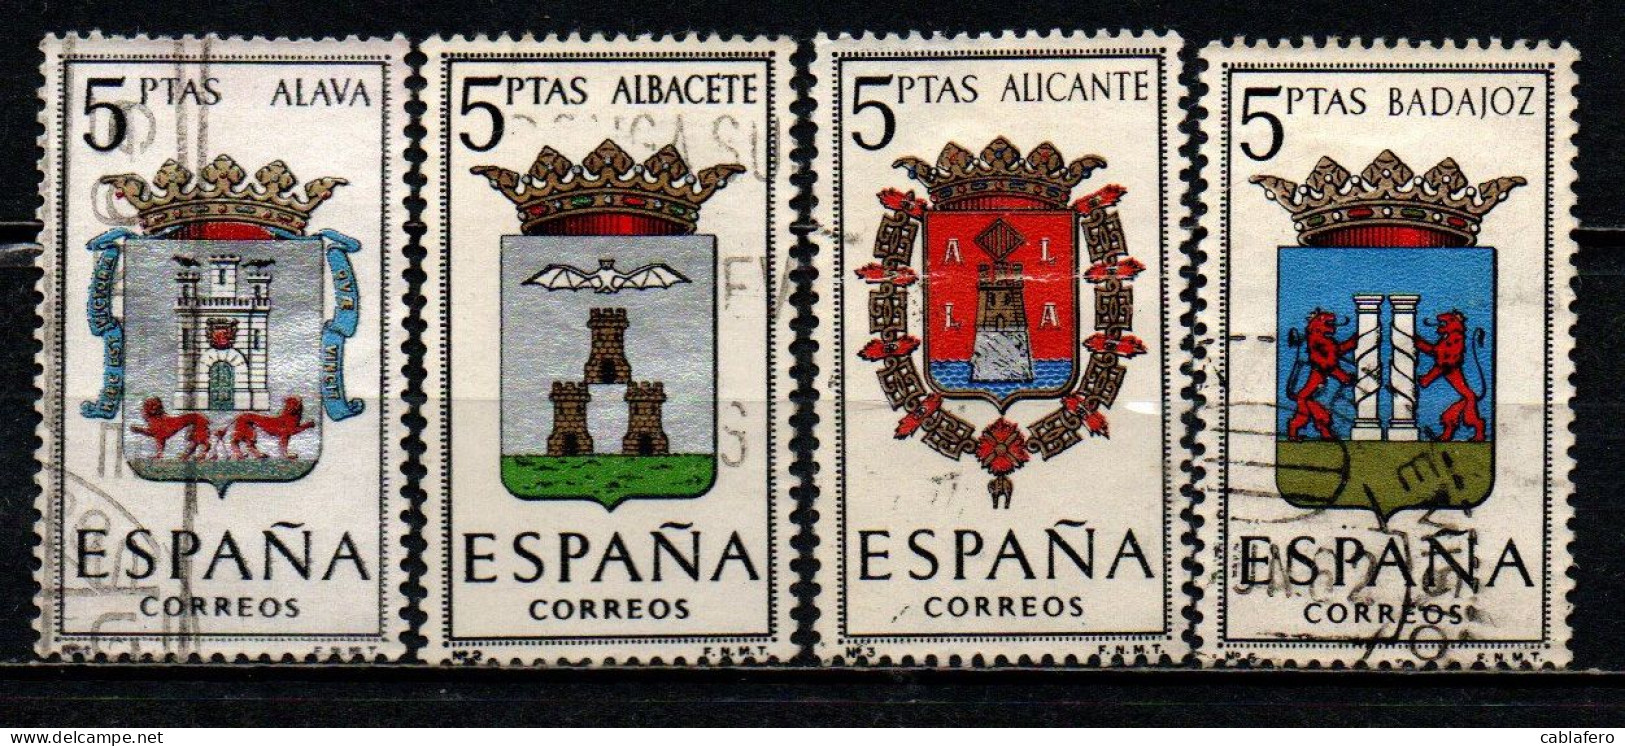 SPAGNA - 1962 - SERIE STEMMI DELLE PROVINCIE SPAGNOLE: ALAVA, ALBACETE, ALICANTE, BADAJOZ - USATI - Used Stamps